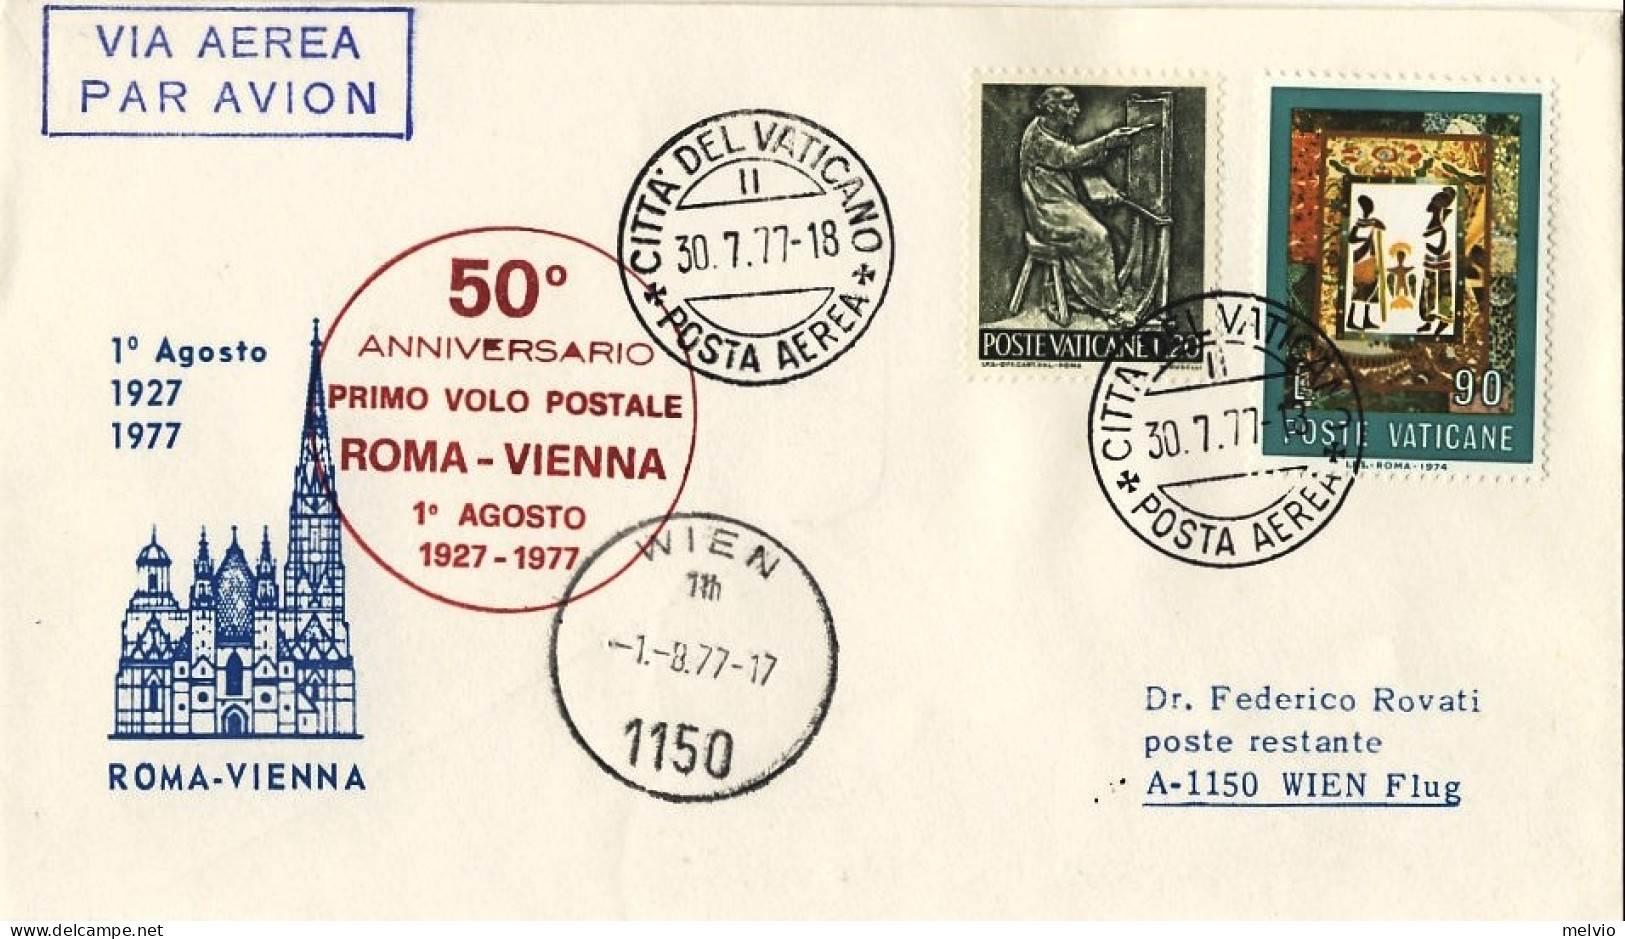 Vaticano-1977 50 Anniversario I^volo Postale Roma Vienna - Airmail